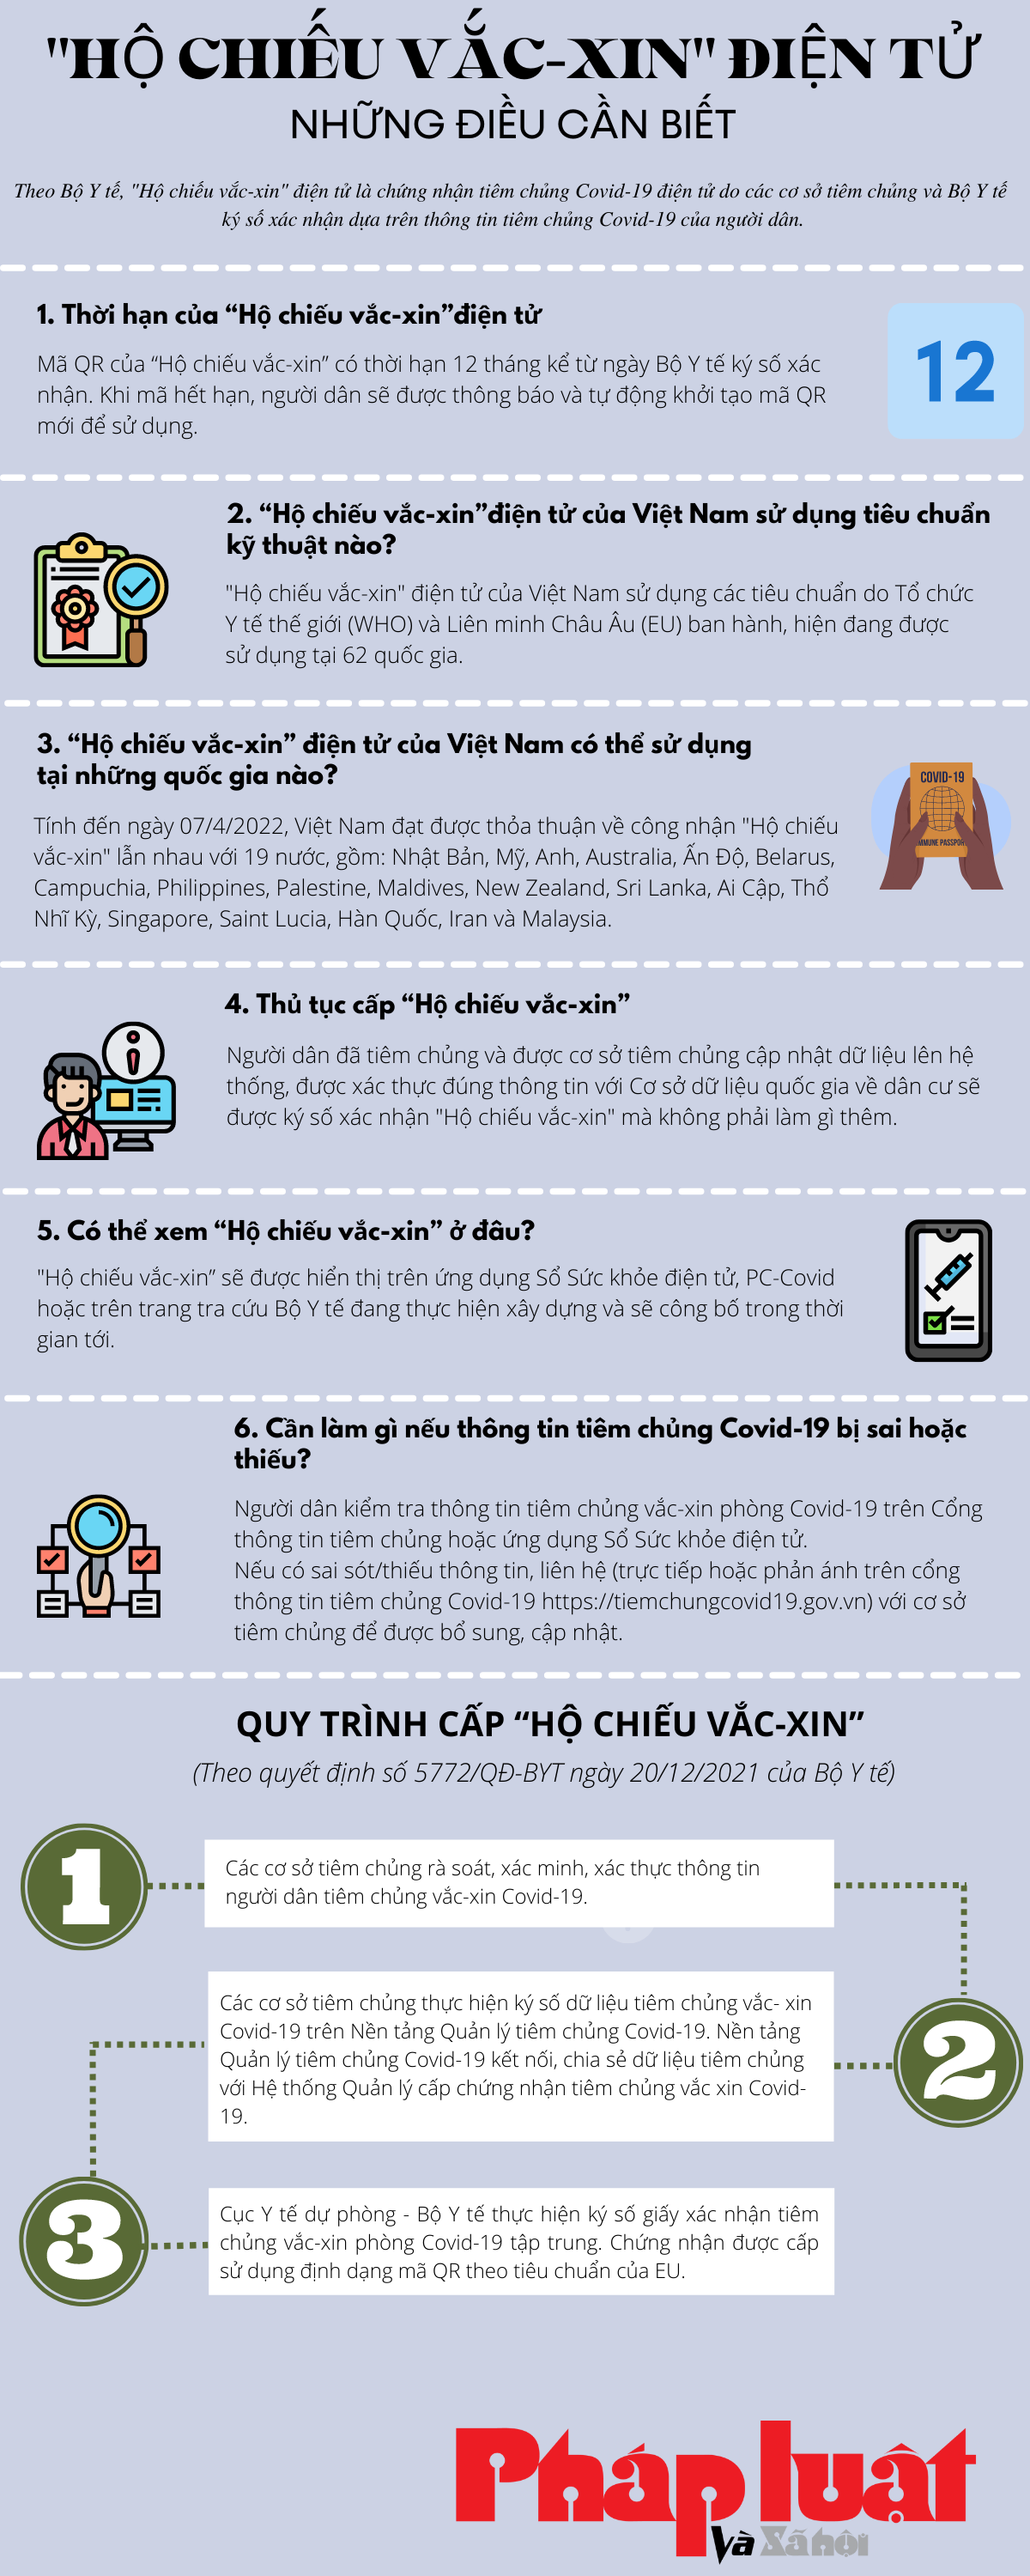 Thông tin cần biết về “Hộ chiếu vắc-xin" điện tử